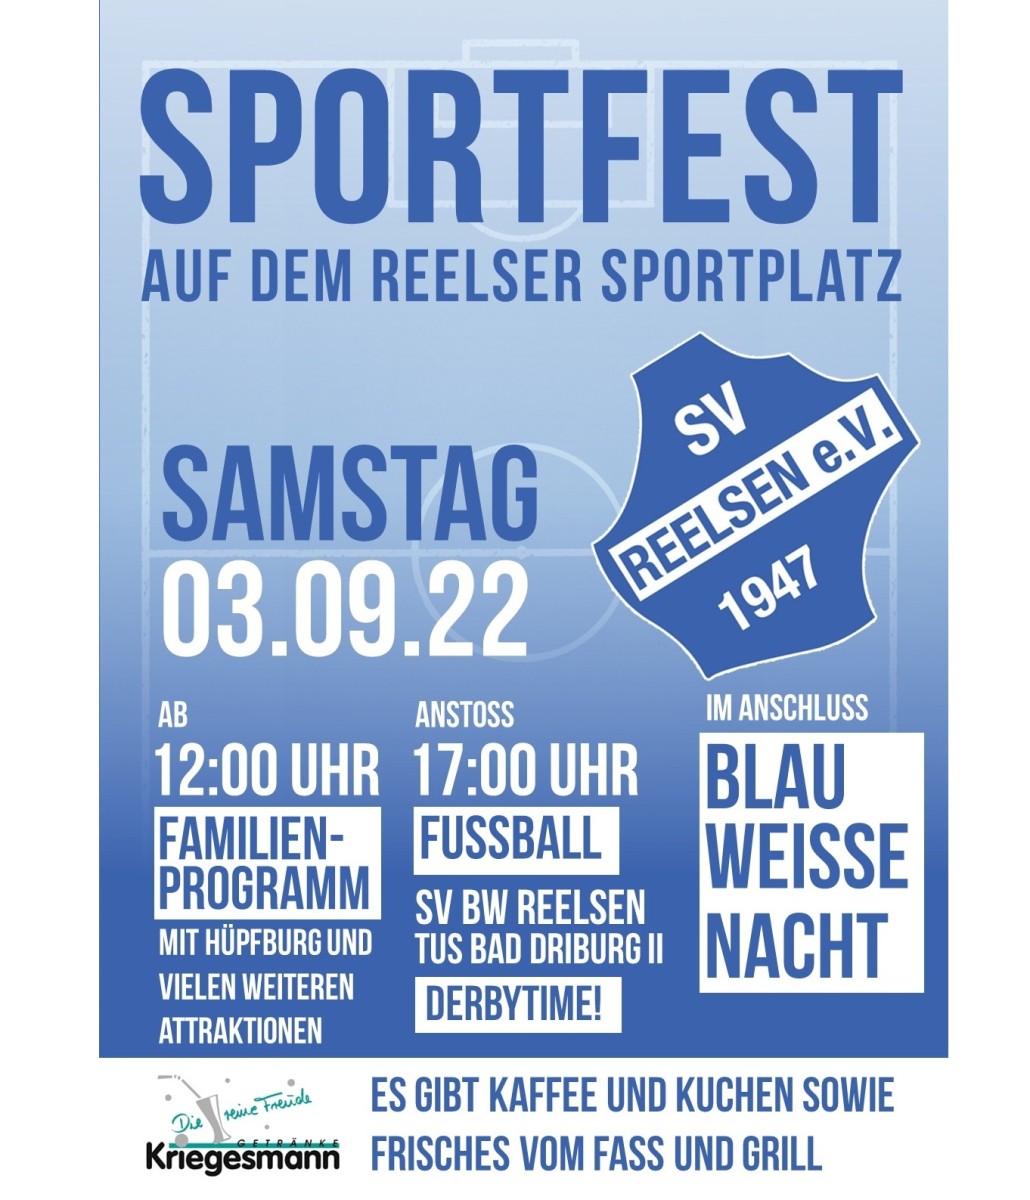 Sportfest auf dem Reelser Sportplatz am Samstag, den 03.09.2022